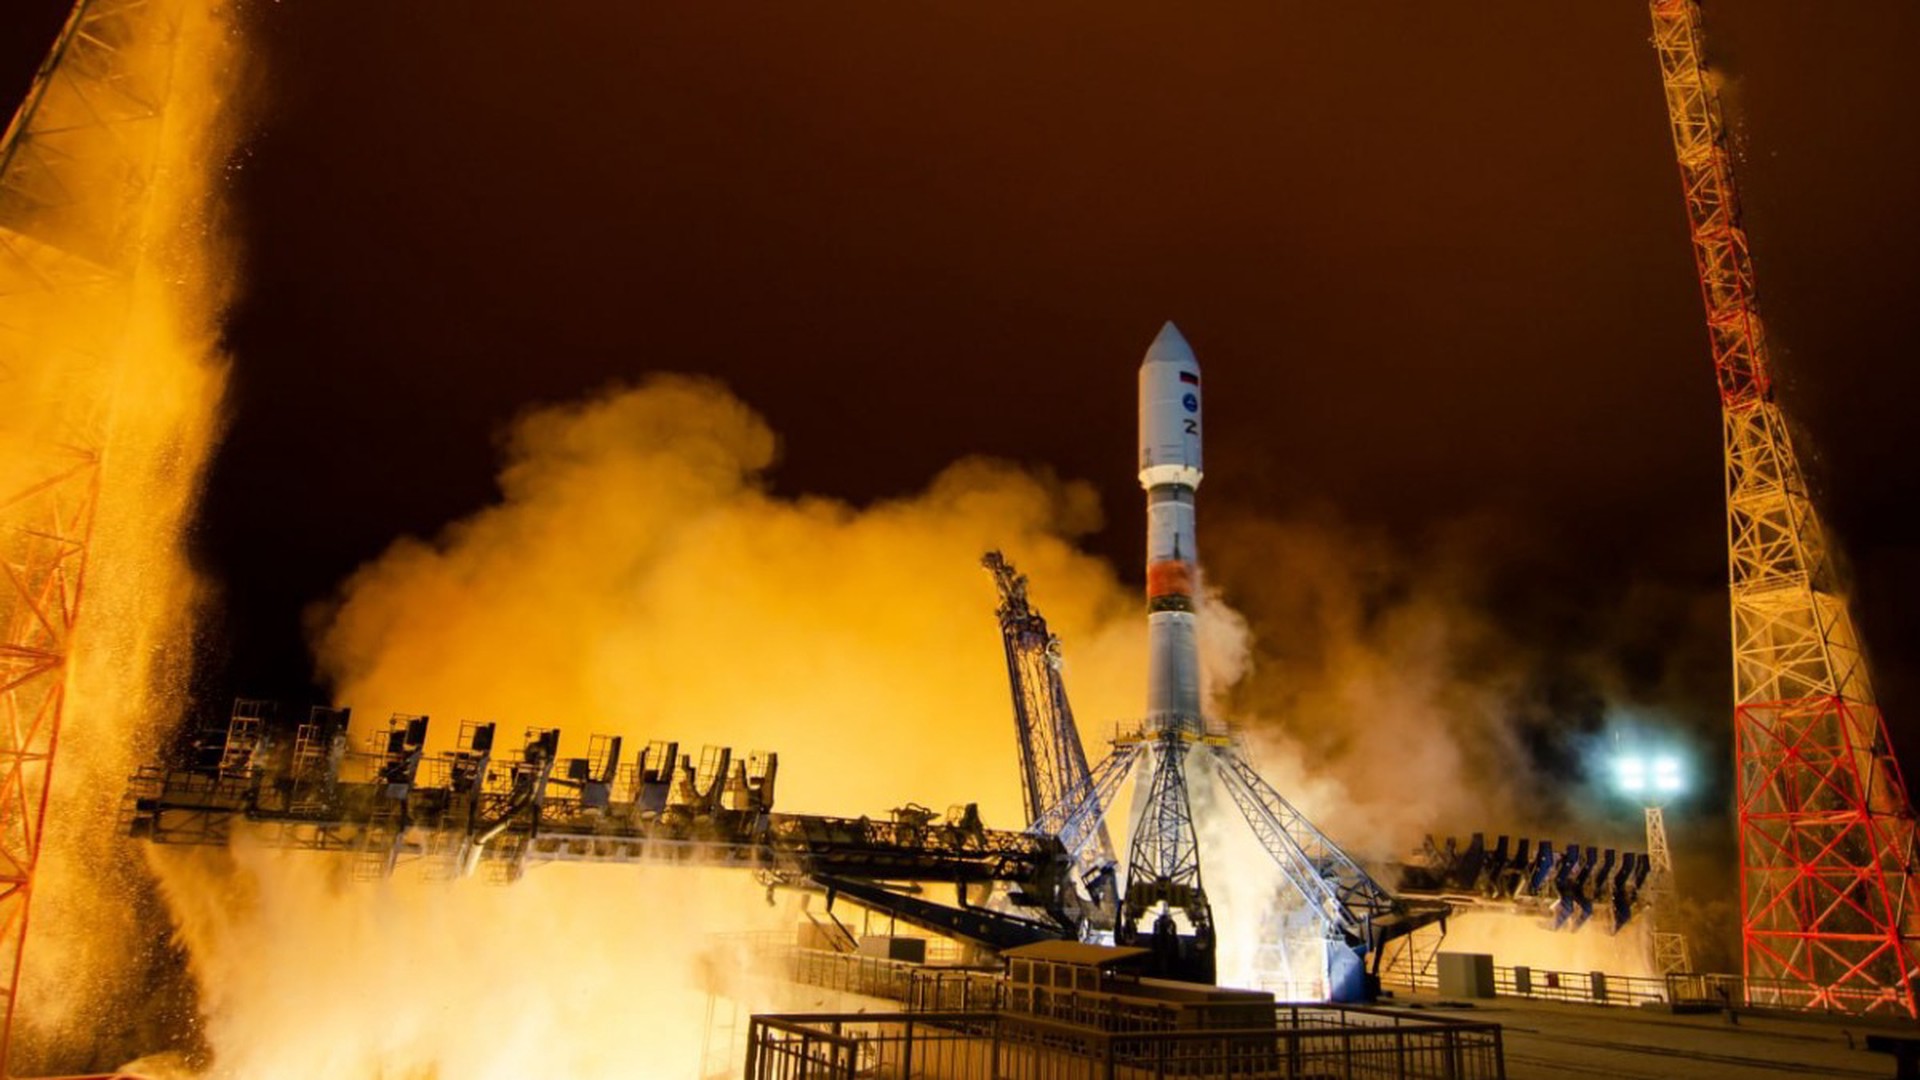 Ракету «Союз-2.1б» с военным спутником запустили с космодрома Плесецк